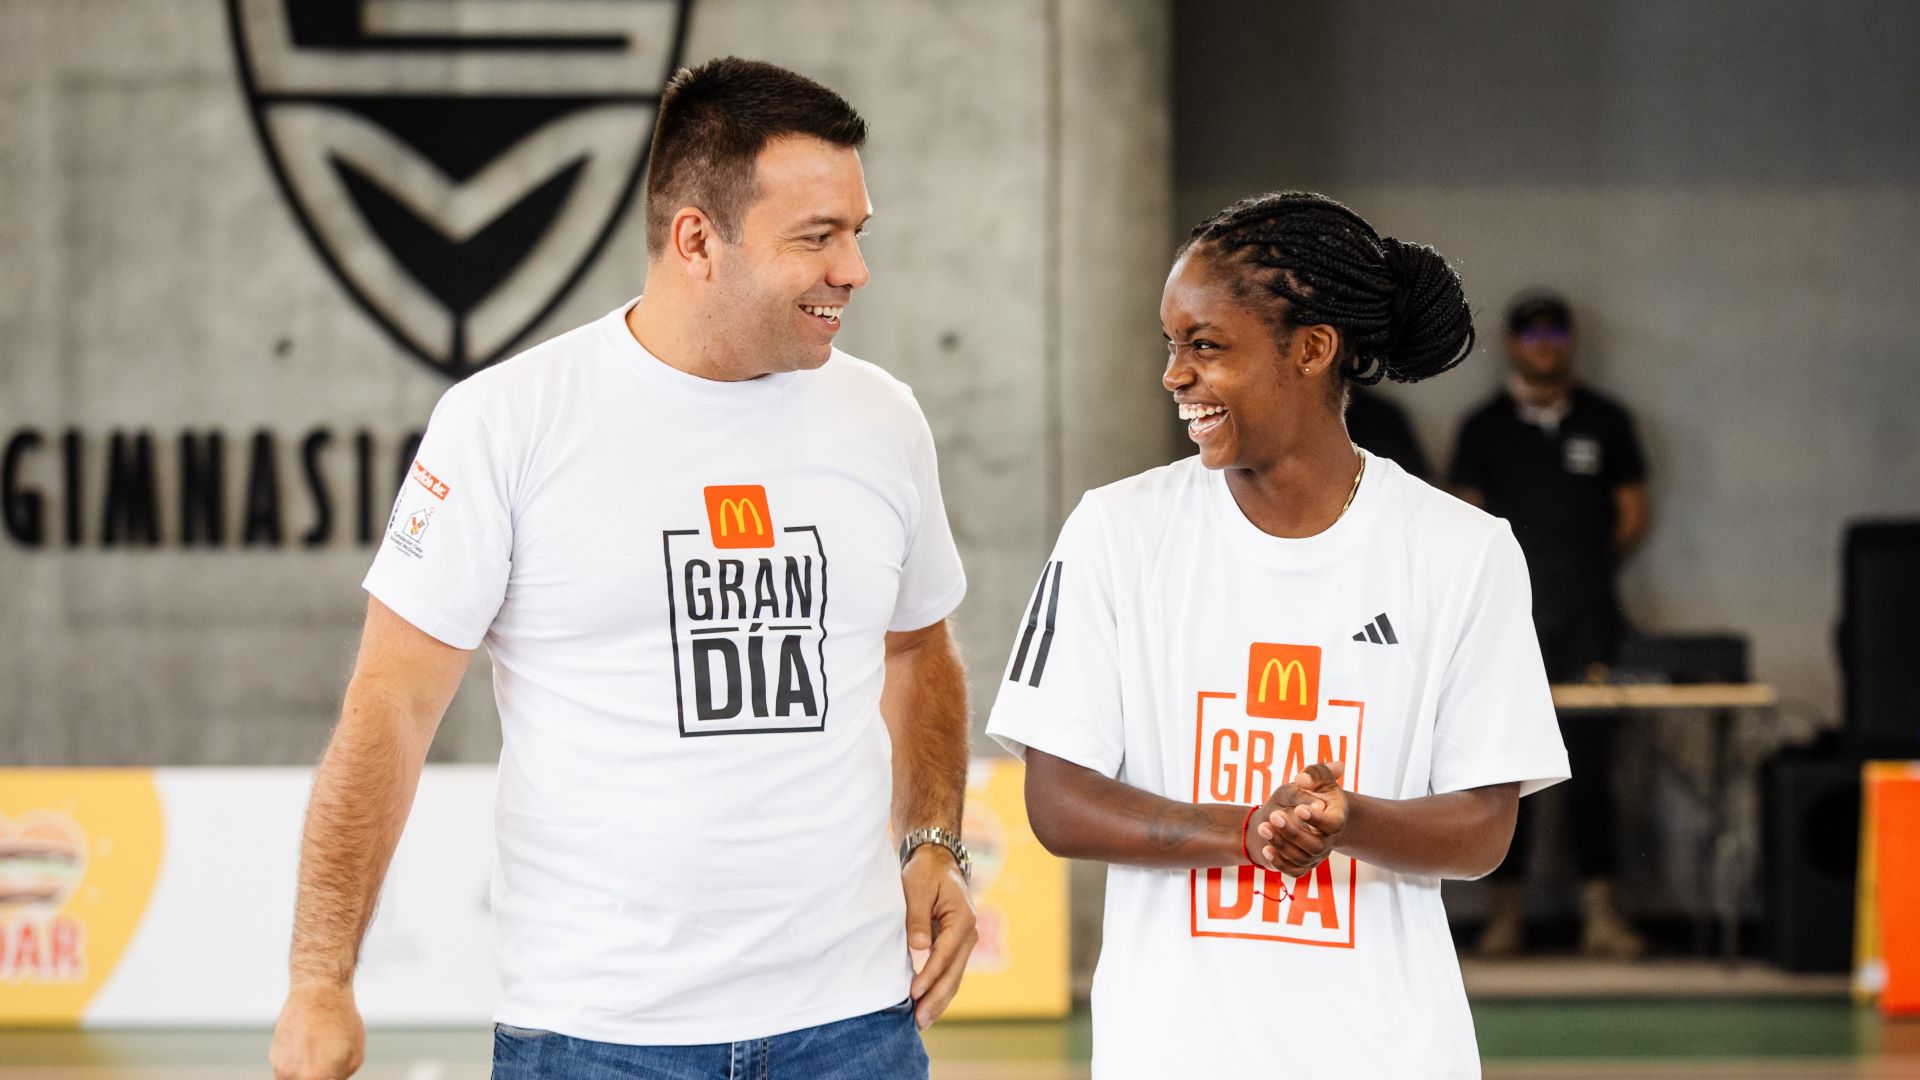 [Colombia] McDonald’s anuncia la octava edición de su jornada solidaria Gran Día, en la que donará 100% de la venta de Big Mac a dos causas sociales en Colombia